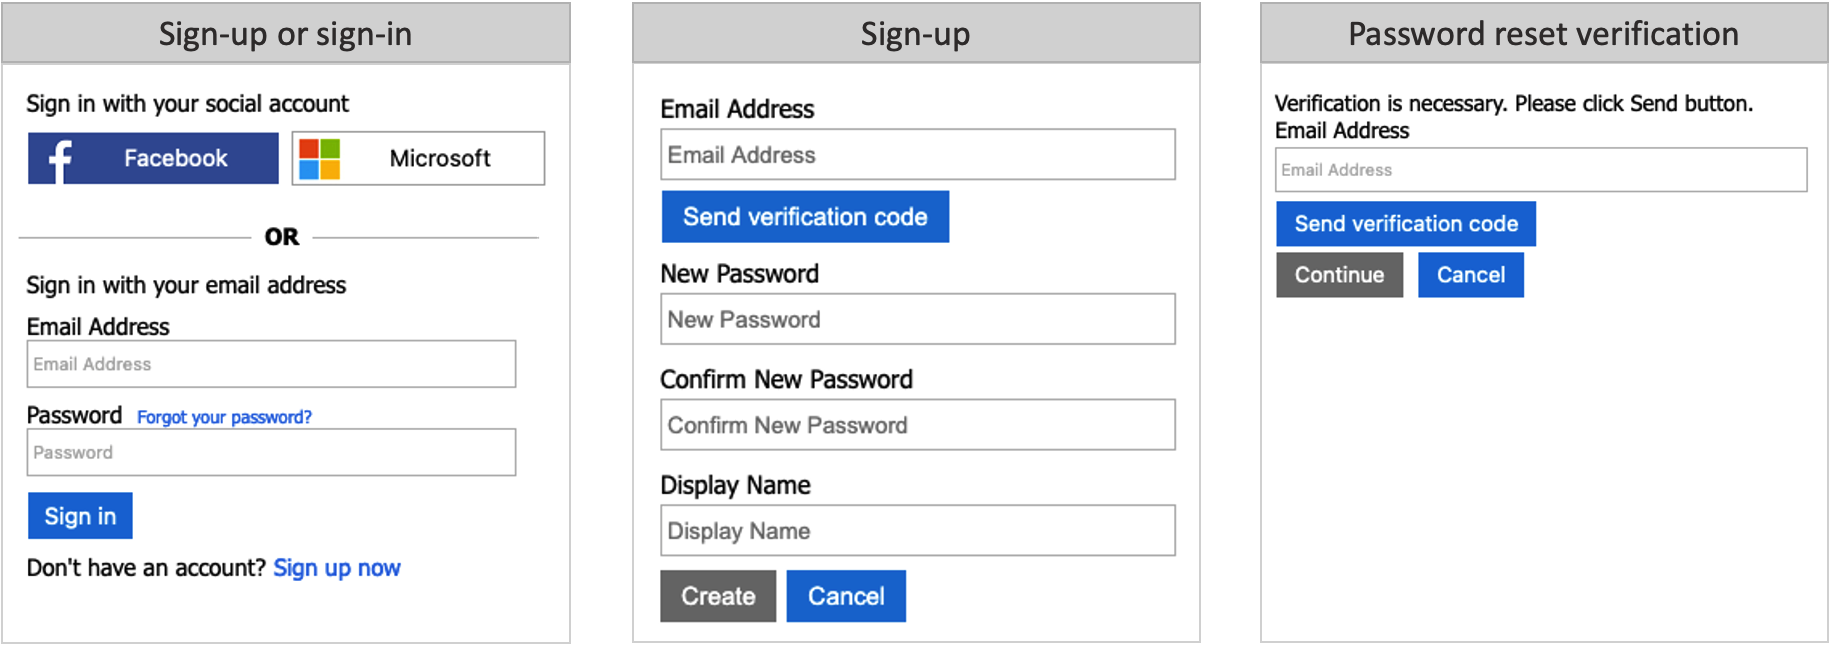 Reihe von Screenshots, die den E-Mail-Registrierungs- oder E-Mail-Anmeldevorgang zeigen.